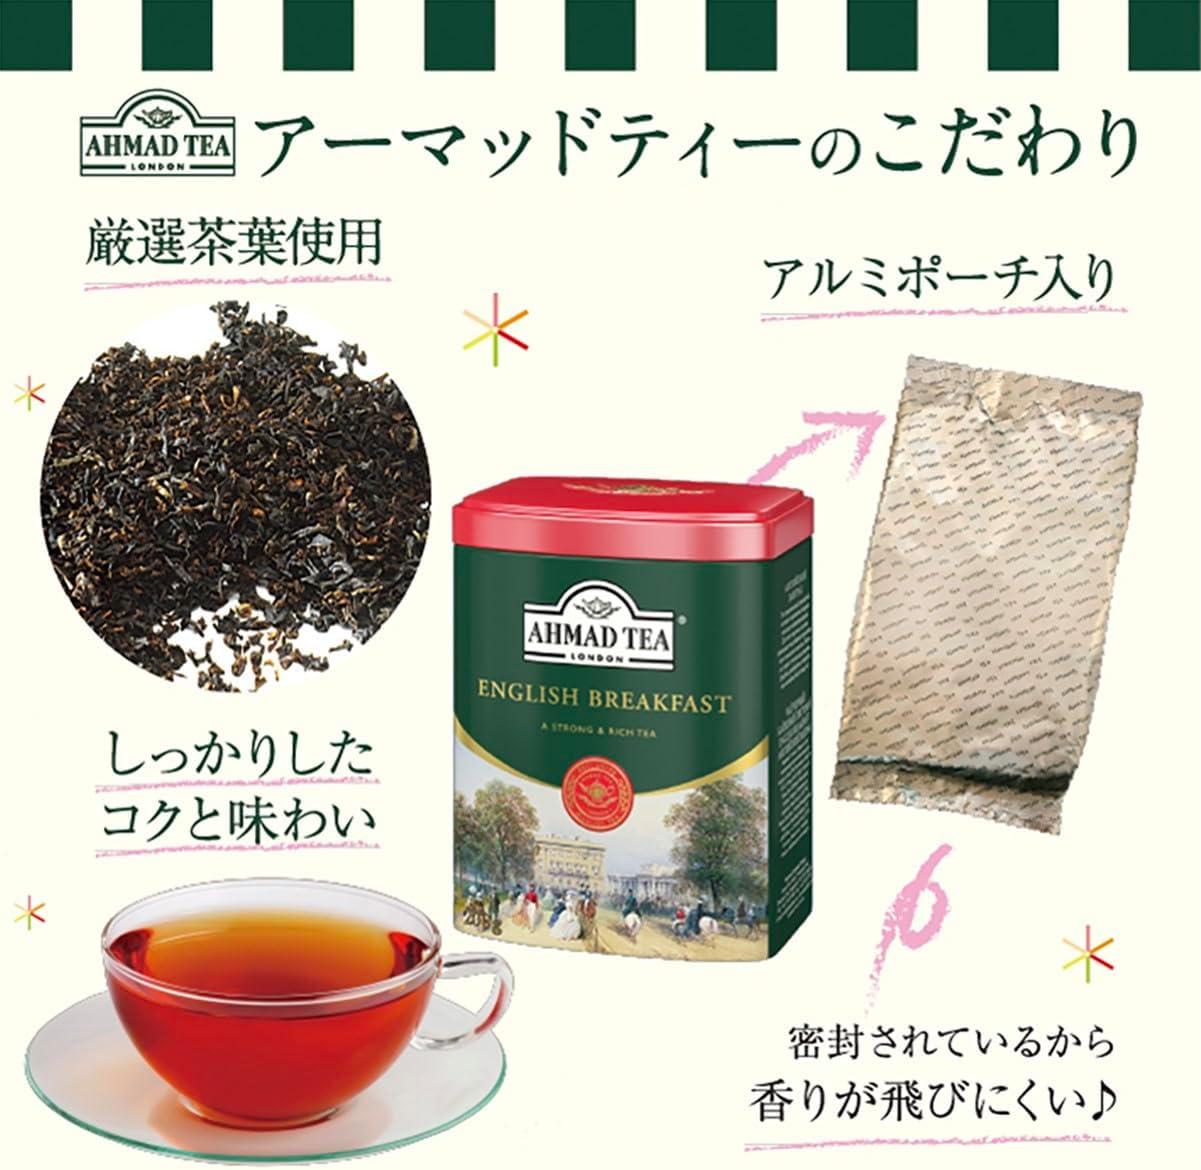 Ahmad Tea Black Tea, English Tea No.1 Teabags, 100 ct